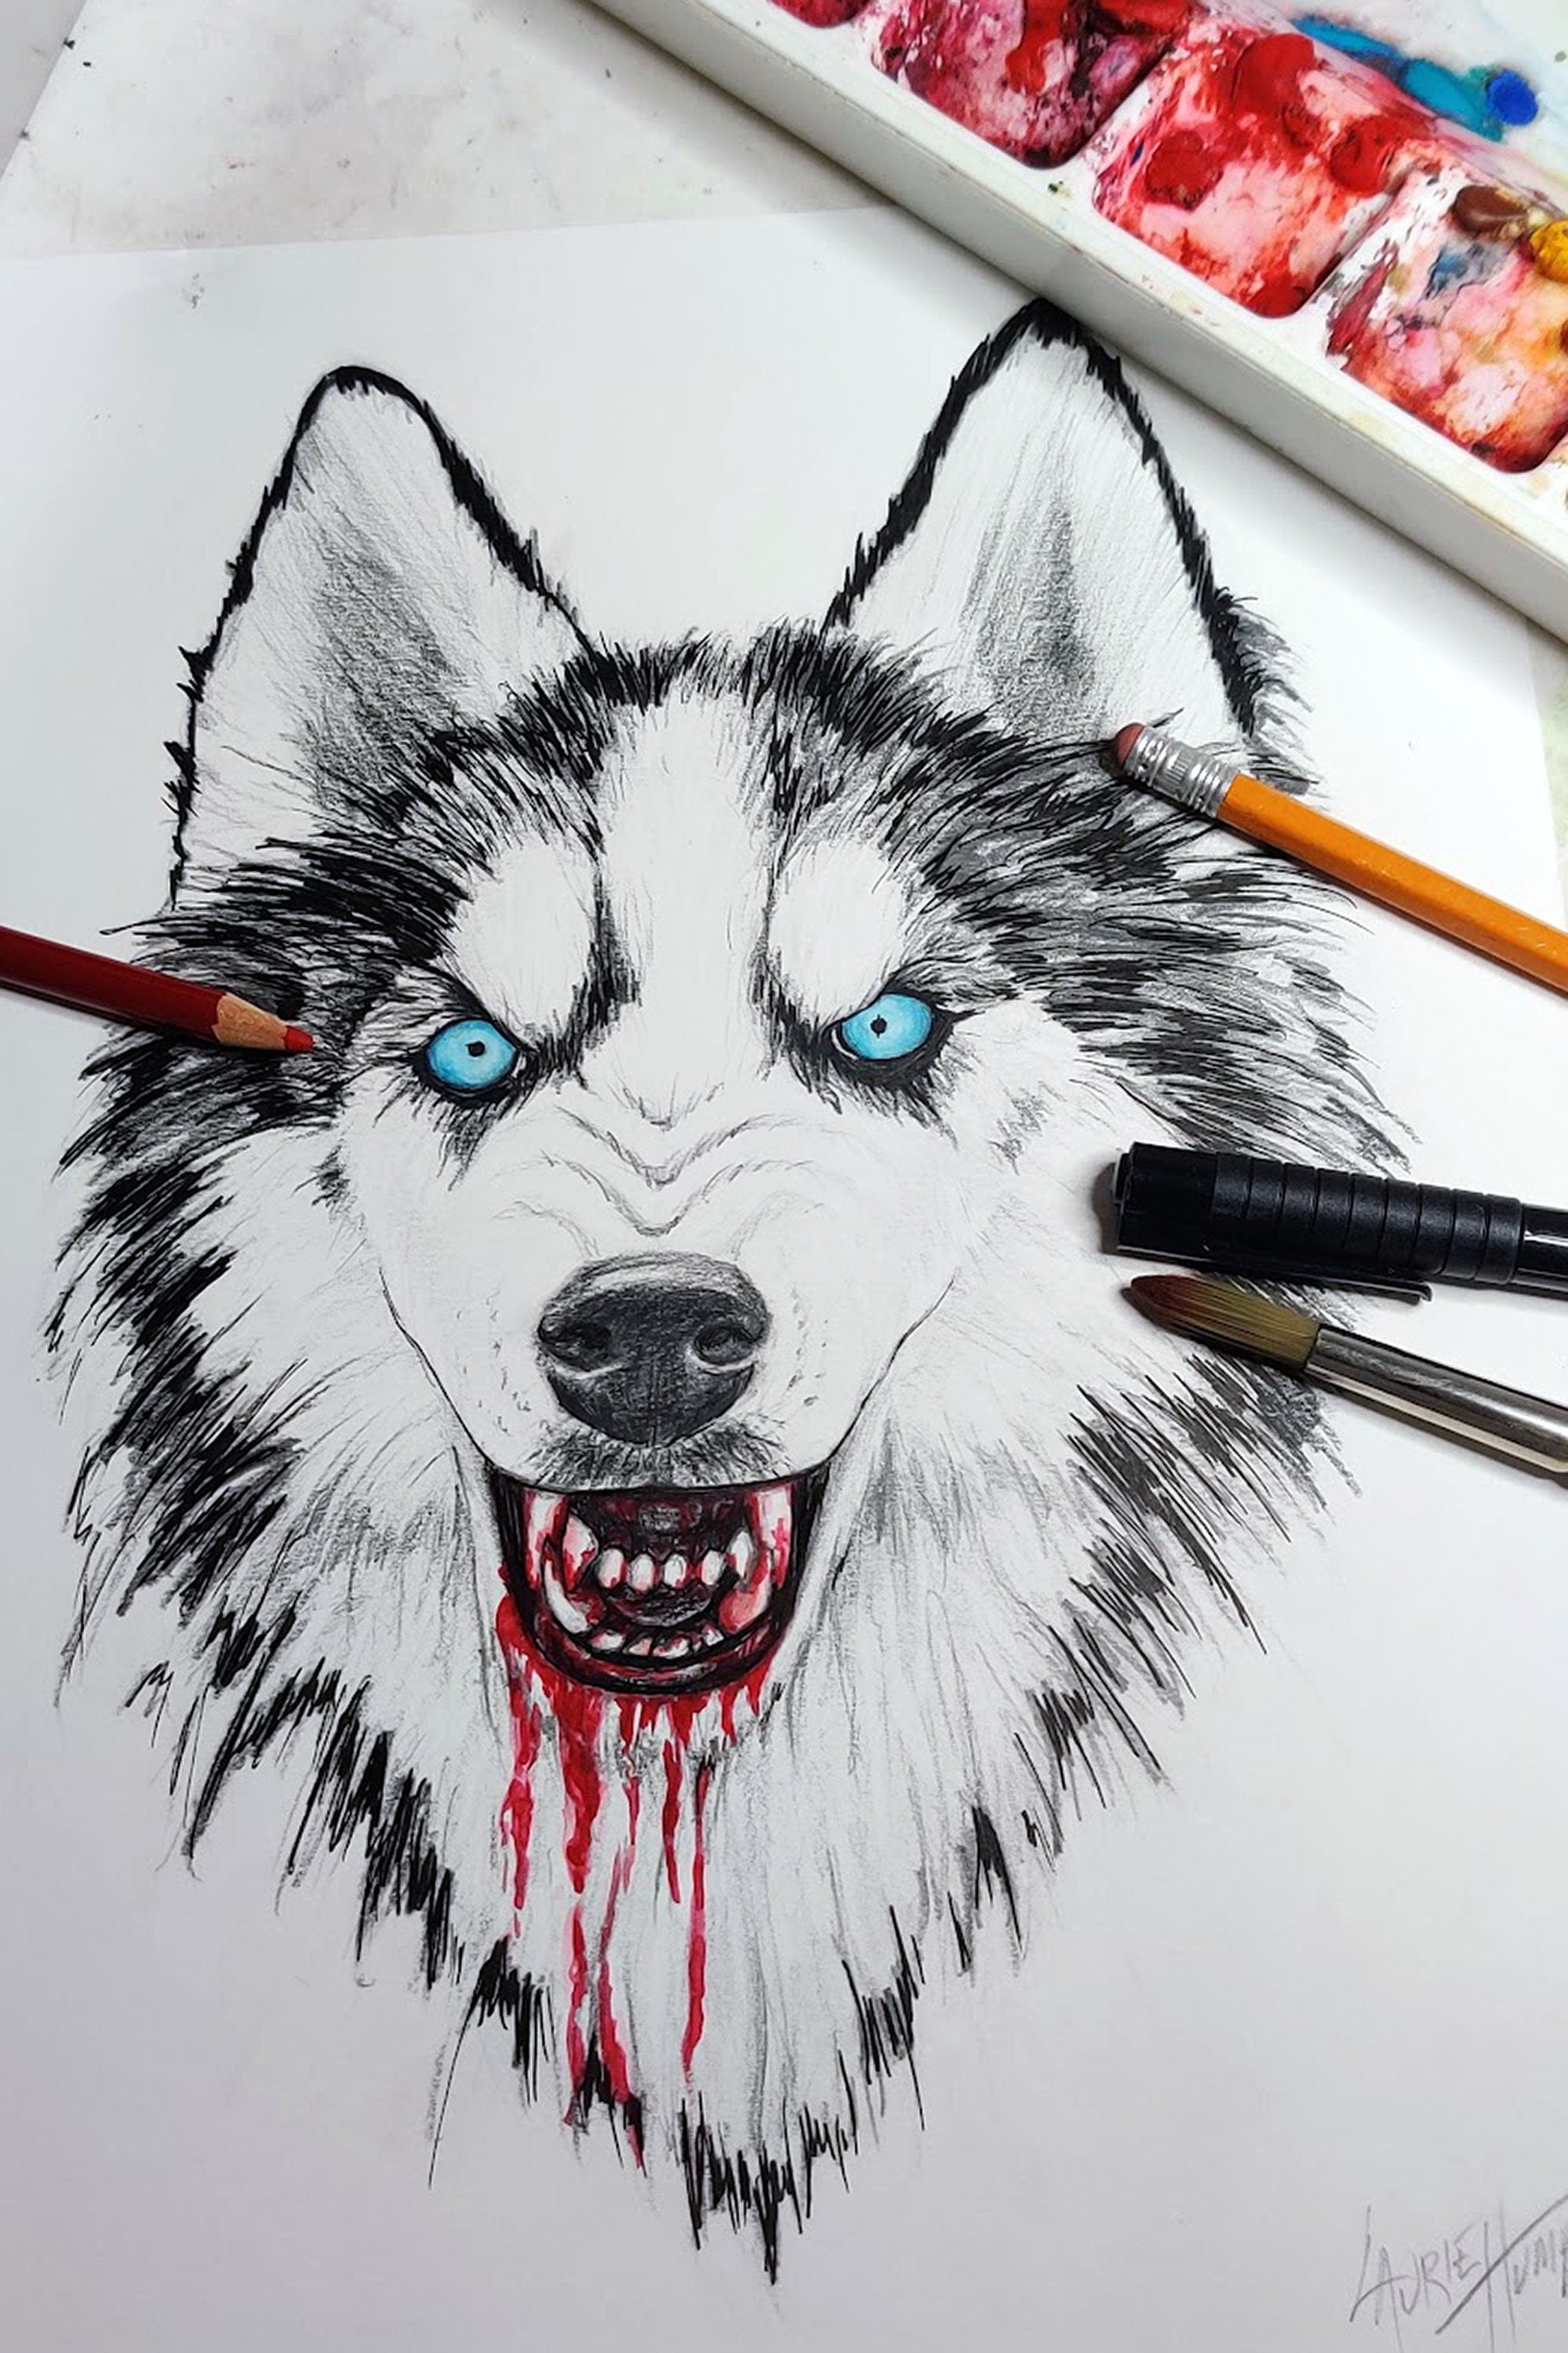 Husky watercolor tattoo by sakura1690 on DeviantArt